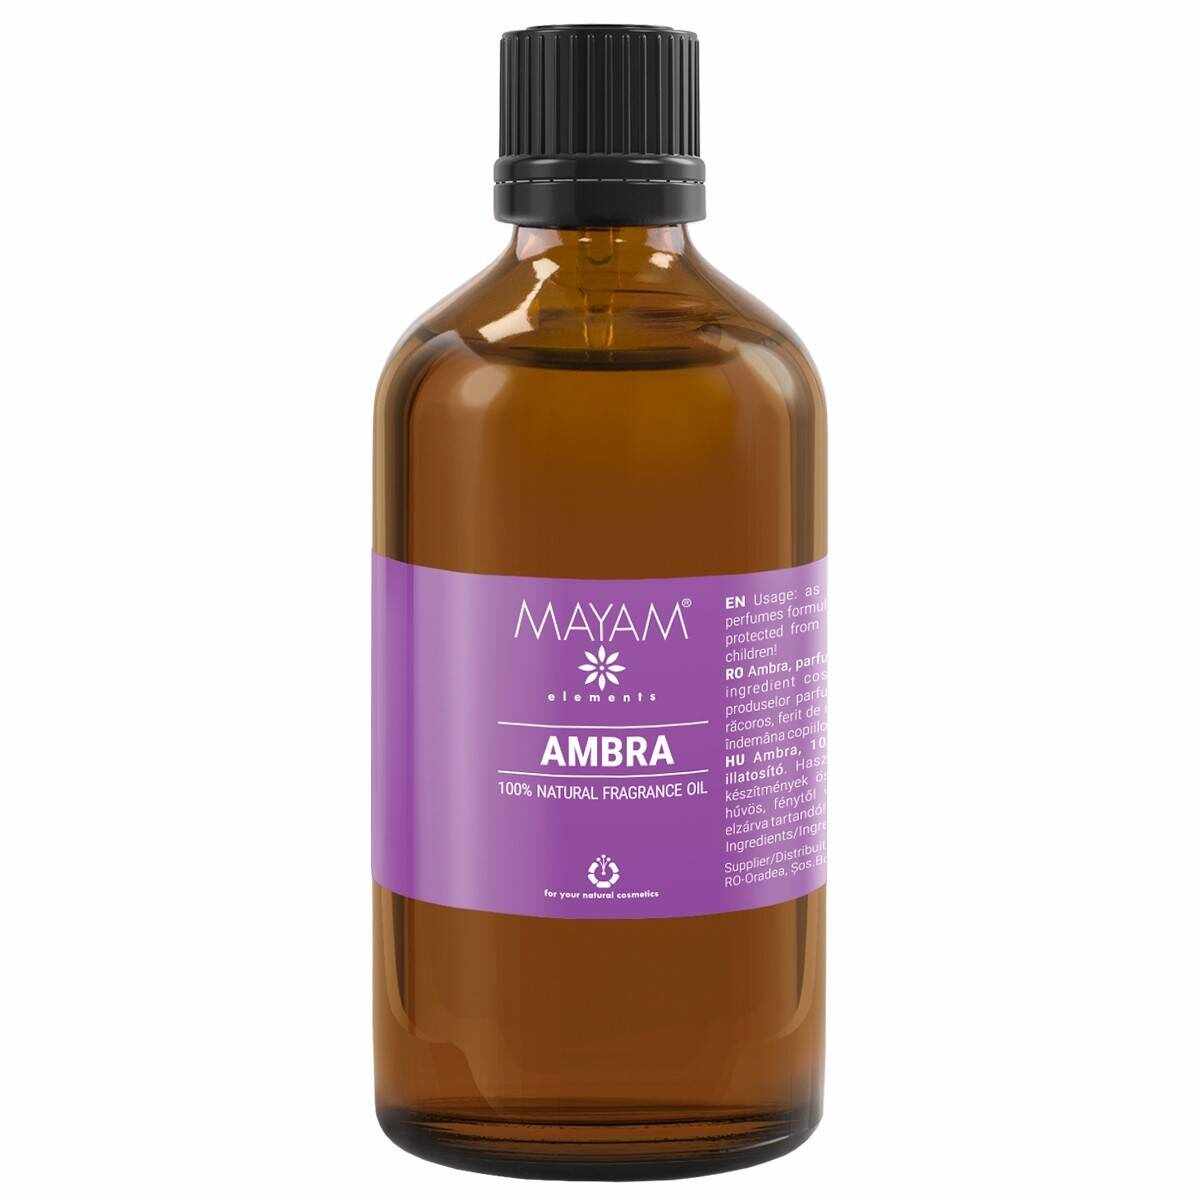 Parfumant natural Ambra, 100ml - Mayam